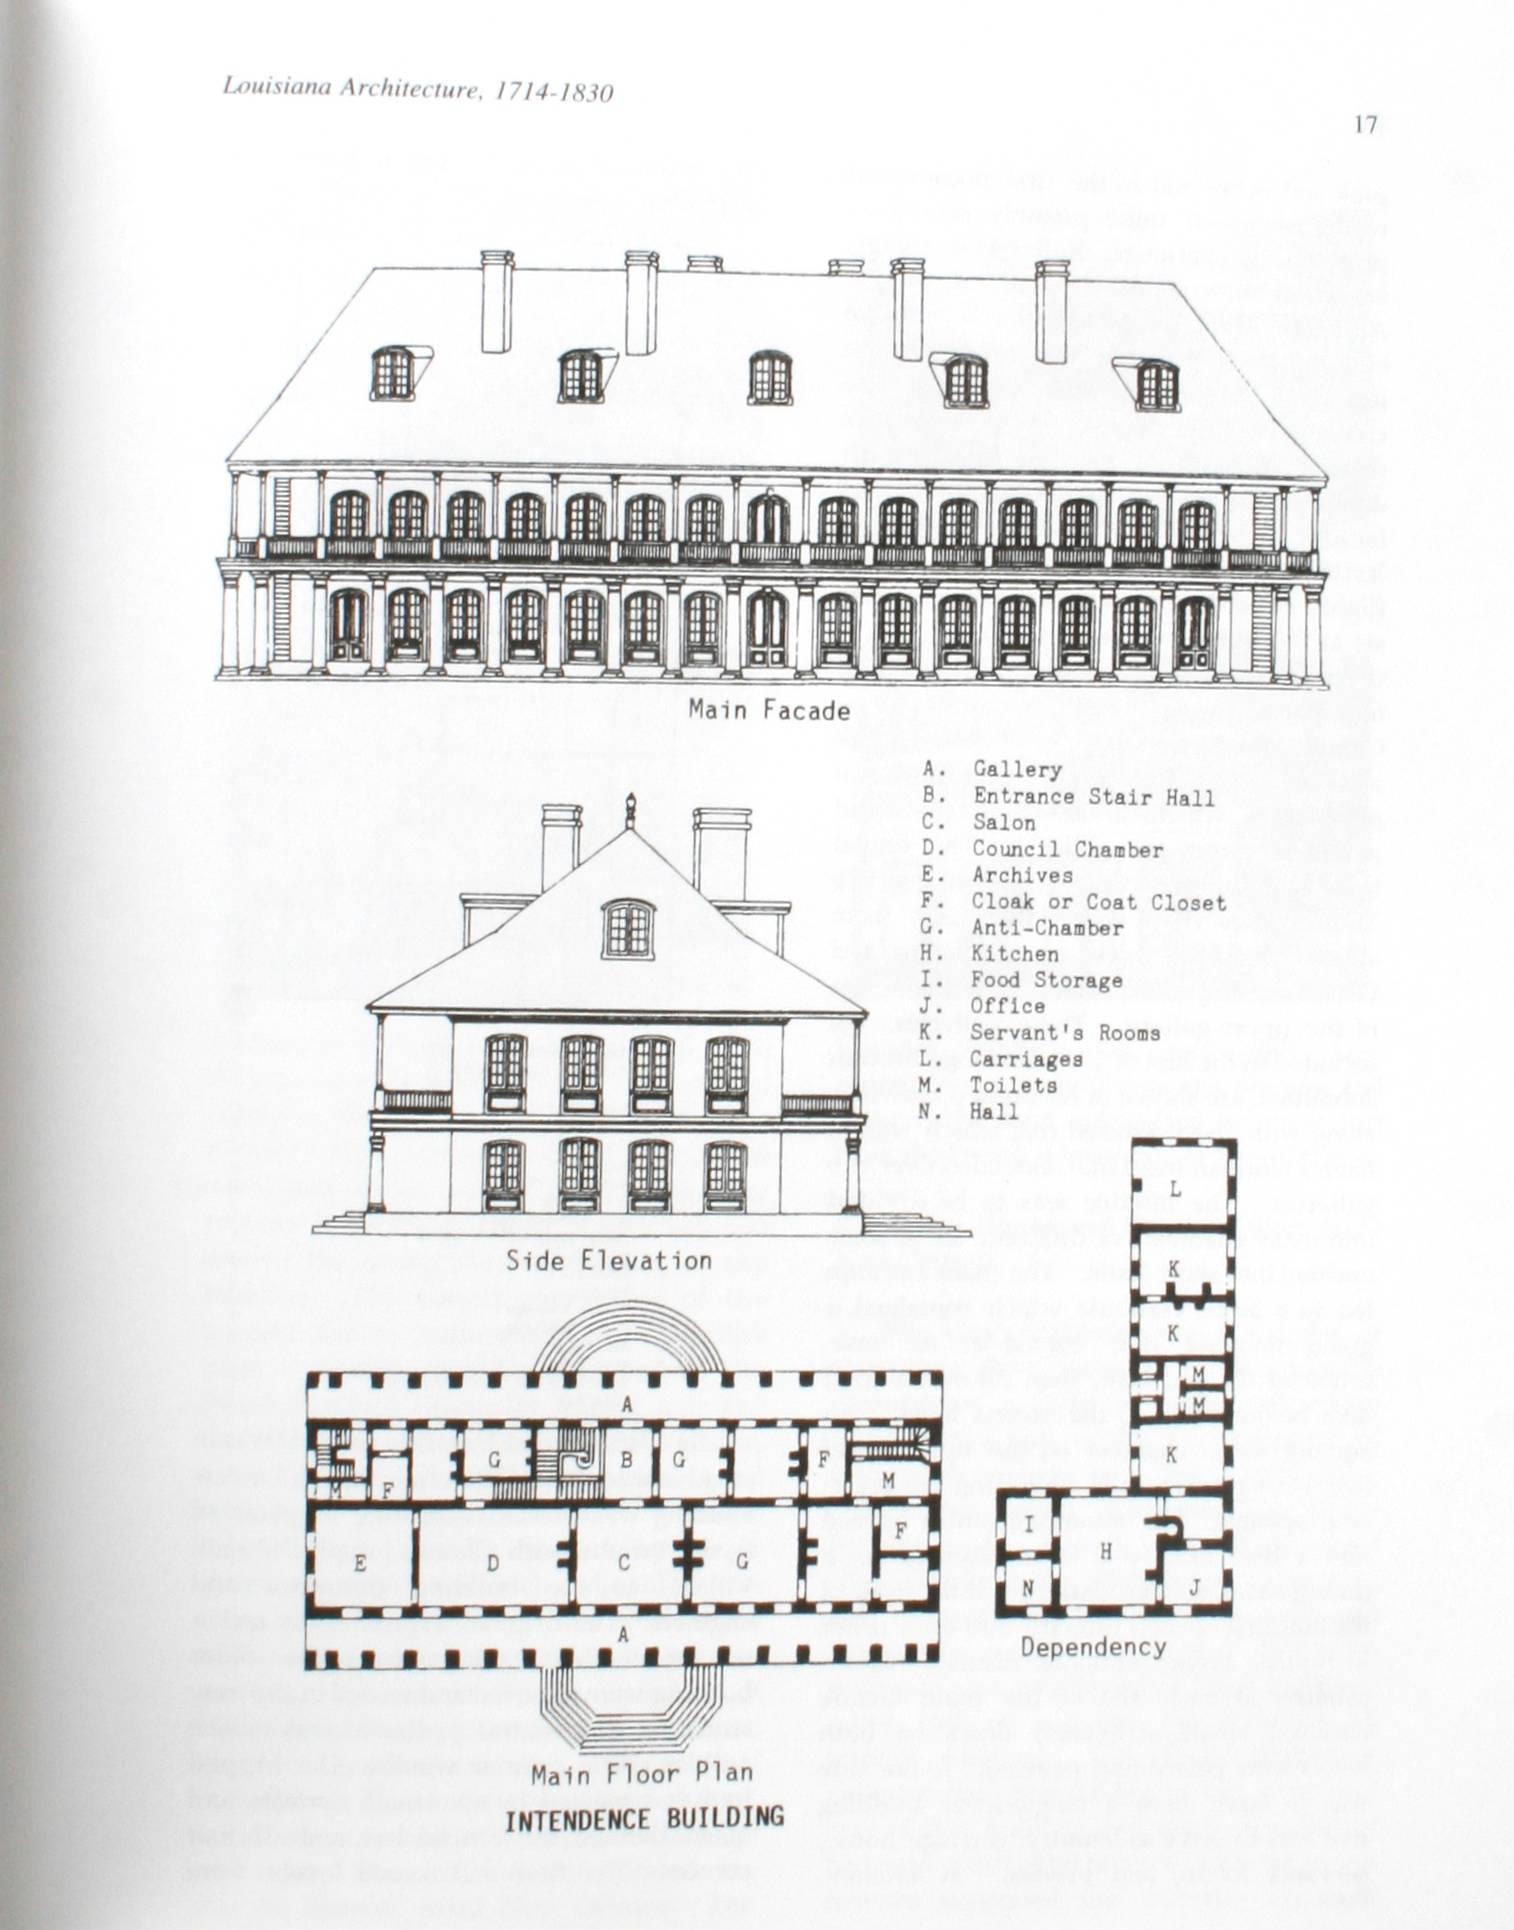 Architecture de la Louisiane 1714-1830 par Fred Daspit, première édition en vente 2